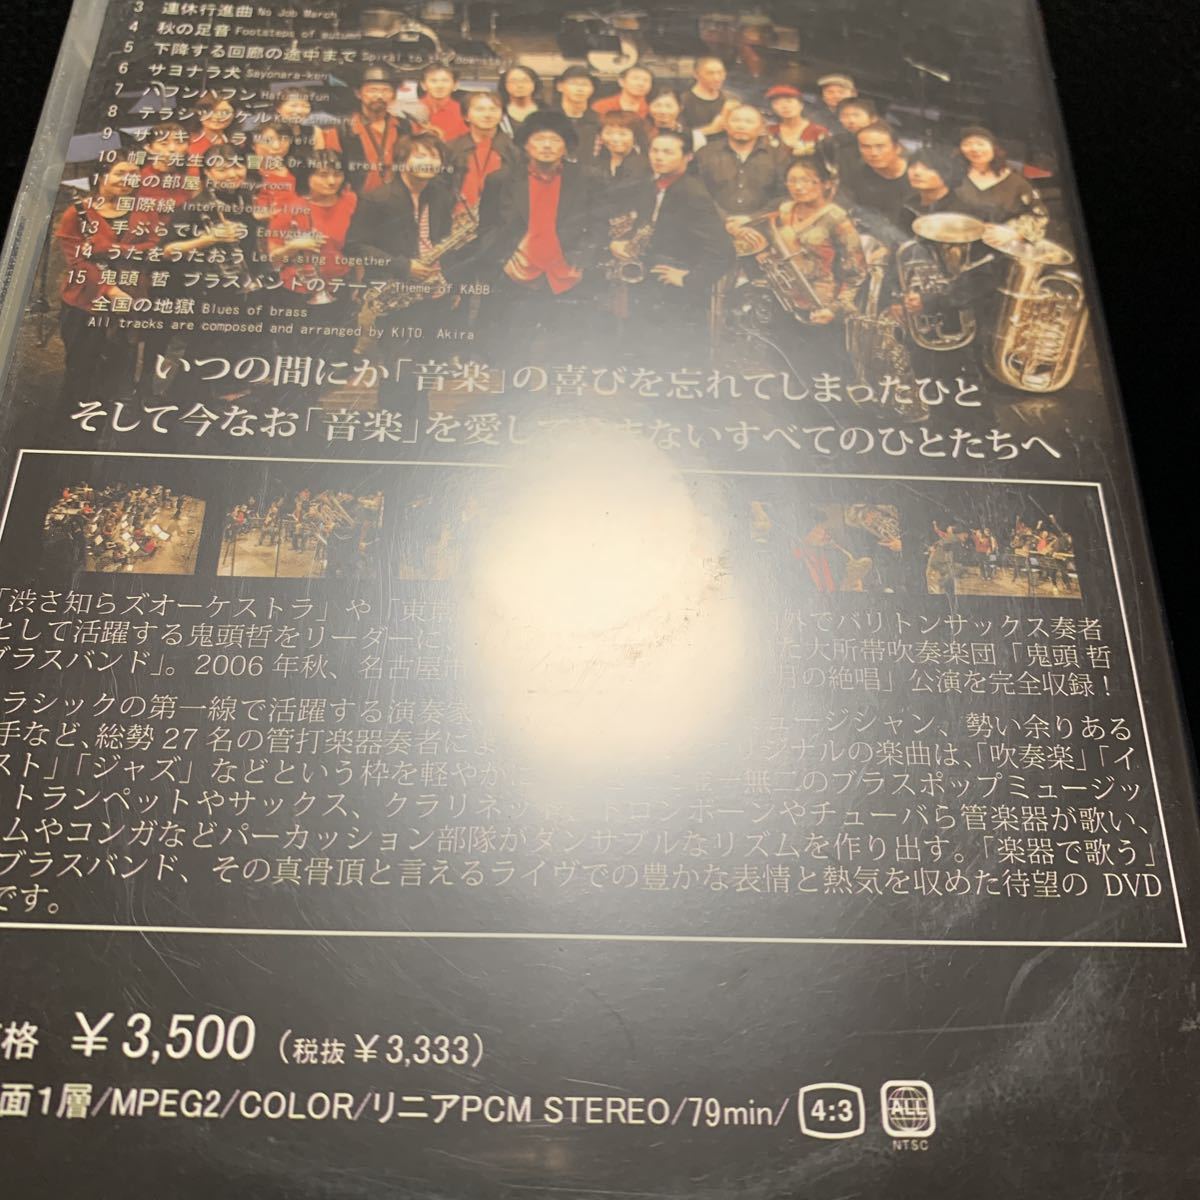 鬼頭哲ブラスバンドの 十月の絶唱 KITO,Akira Brass Band! DVD_画像3